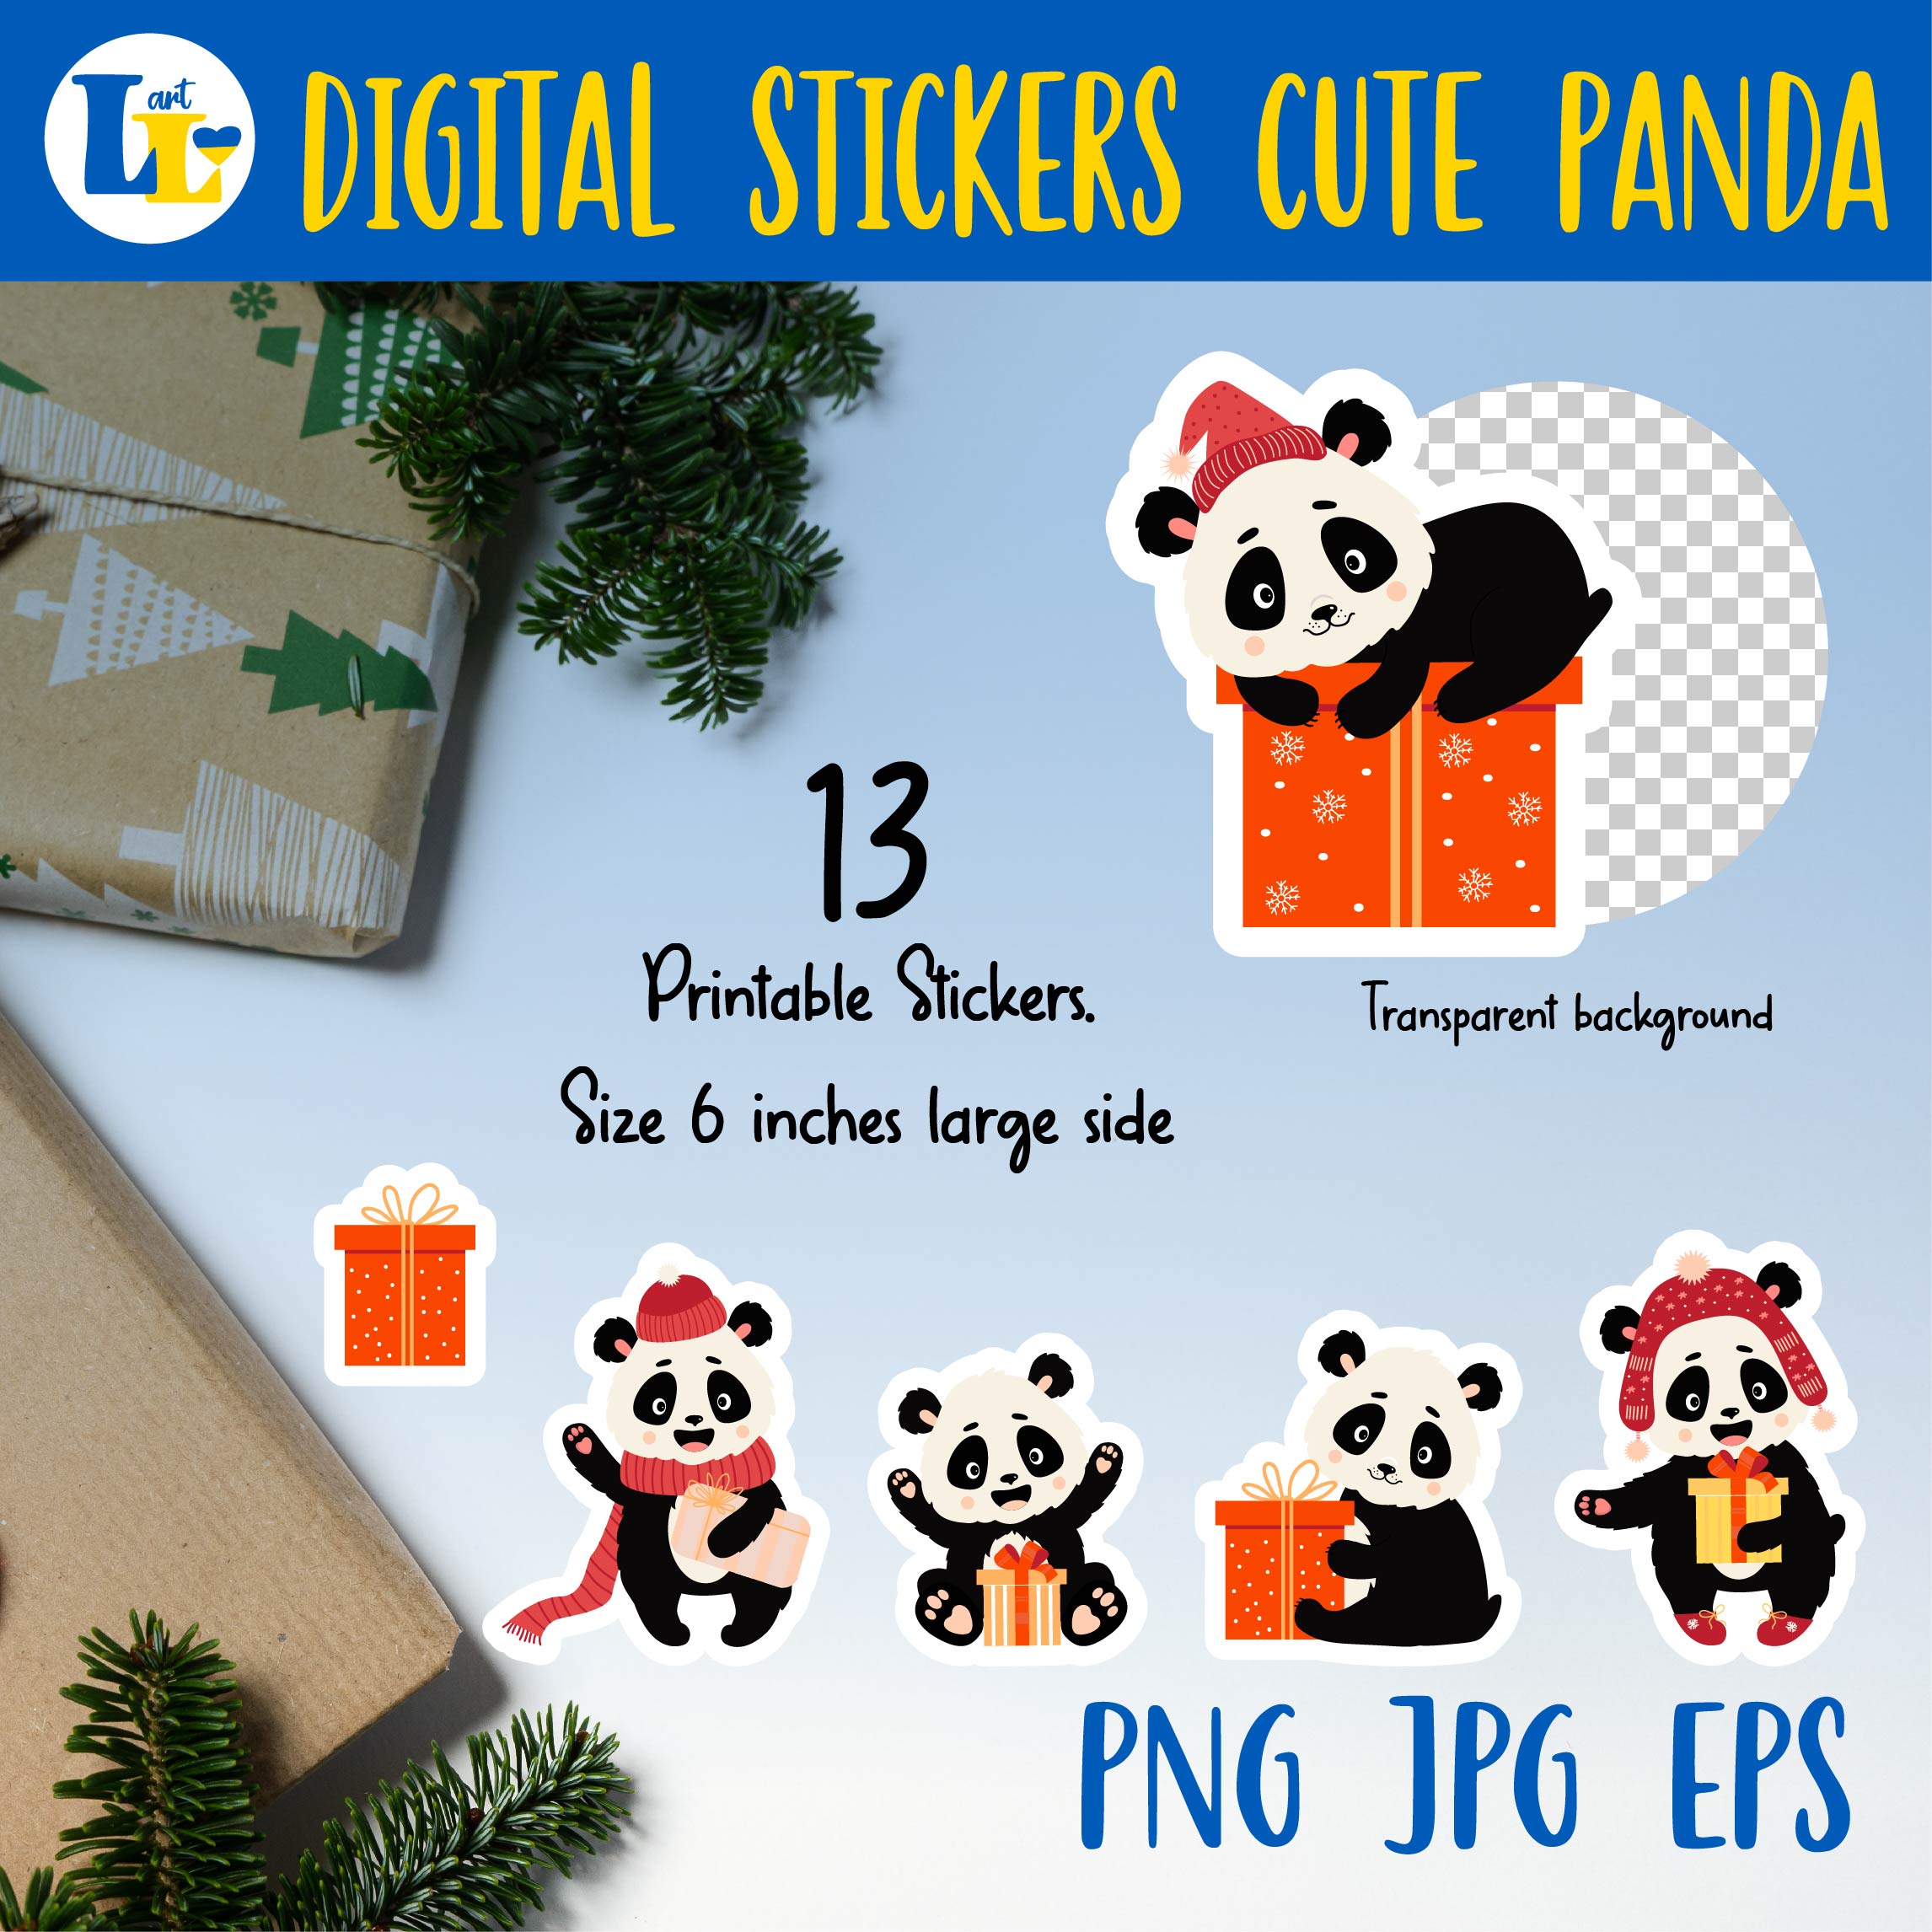 Cute Panda Digital Printable Stickers Bundle Preview Image.